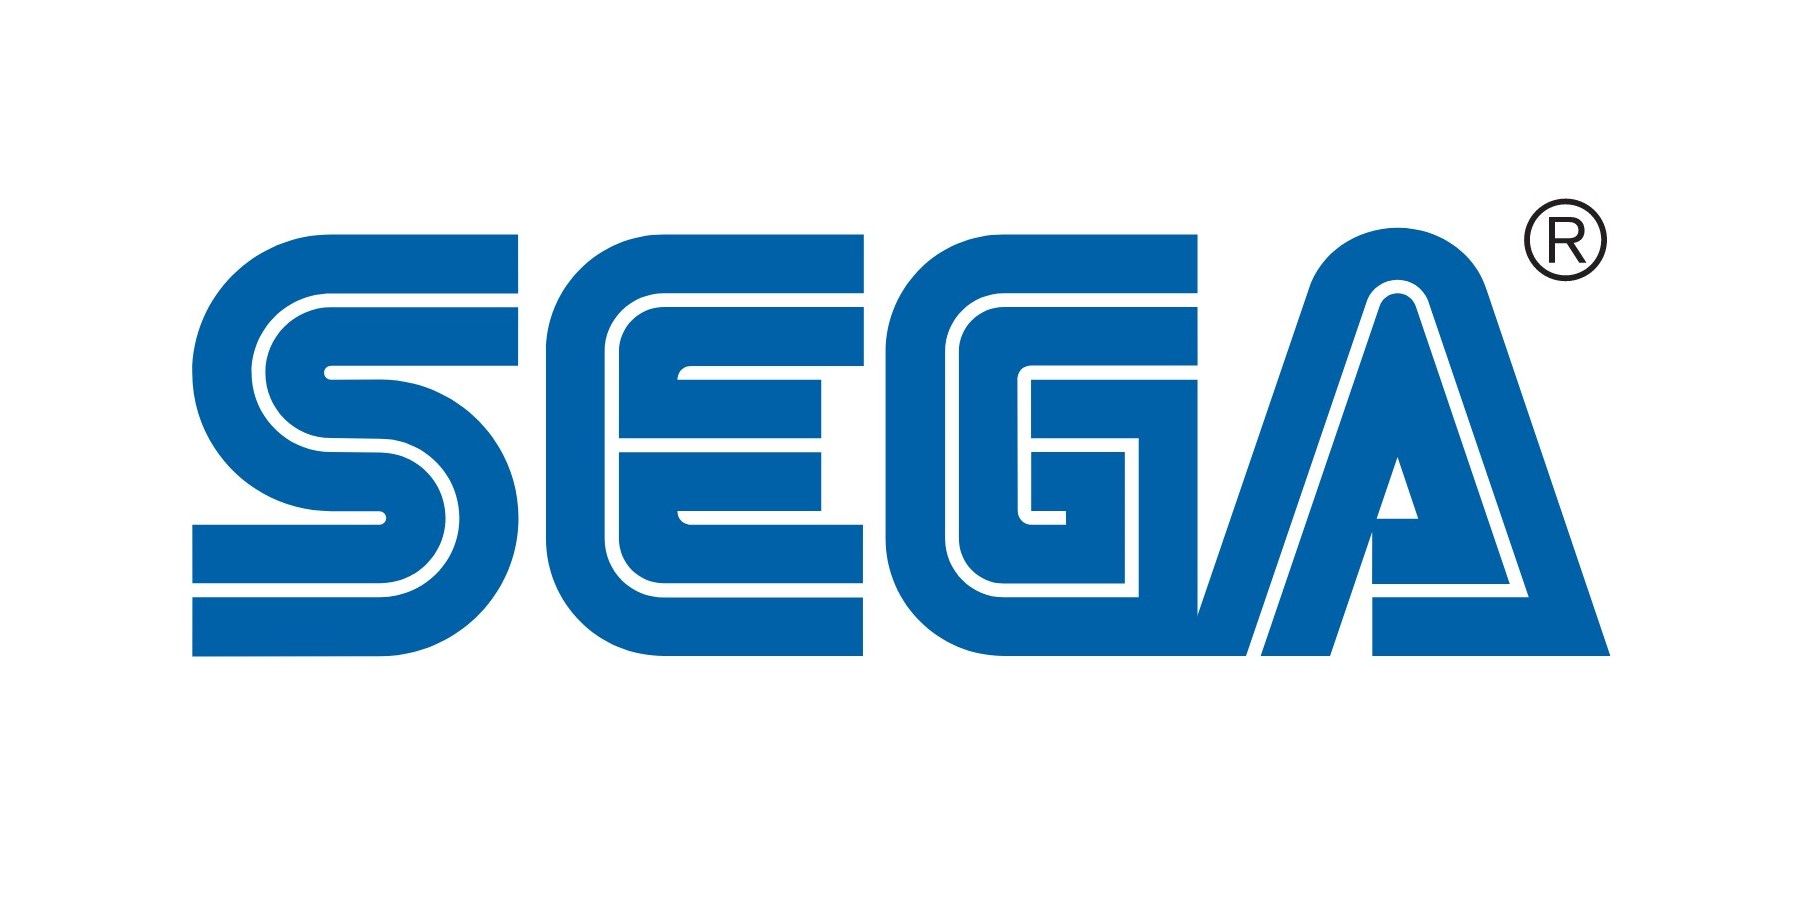 Sega Responds to Acquisition Rumors